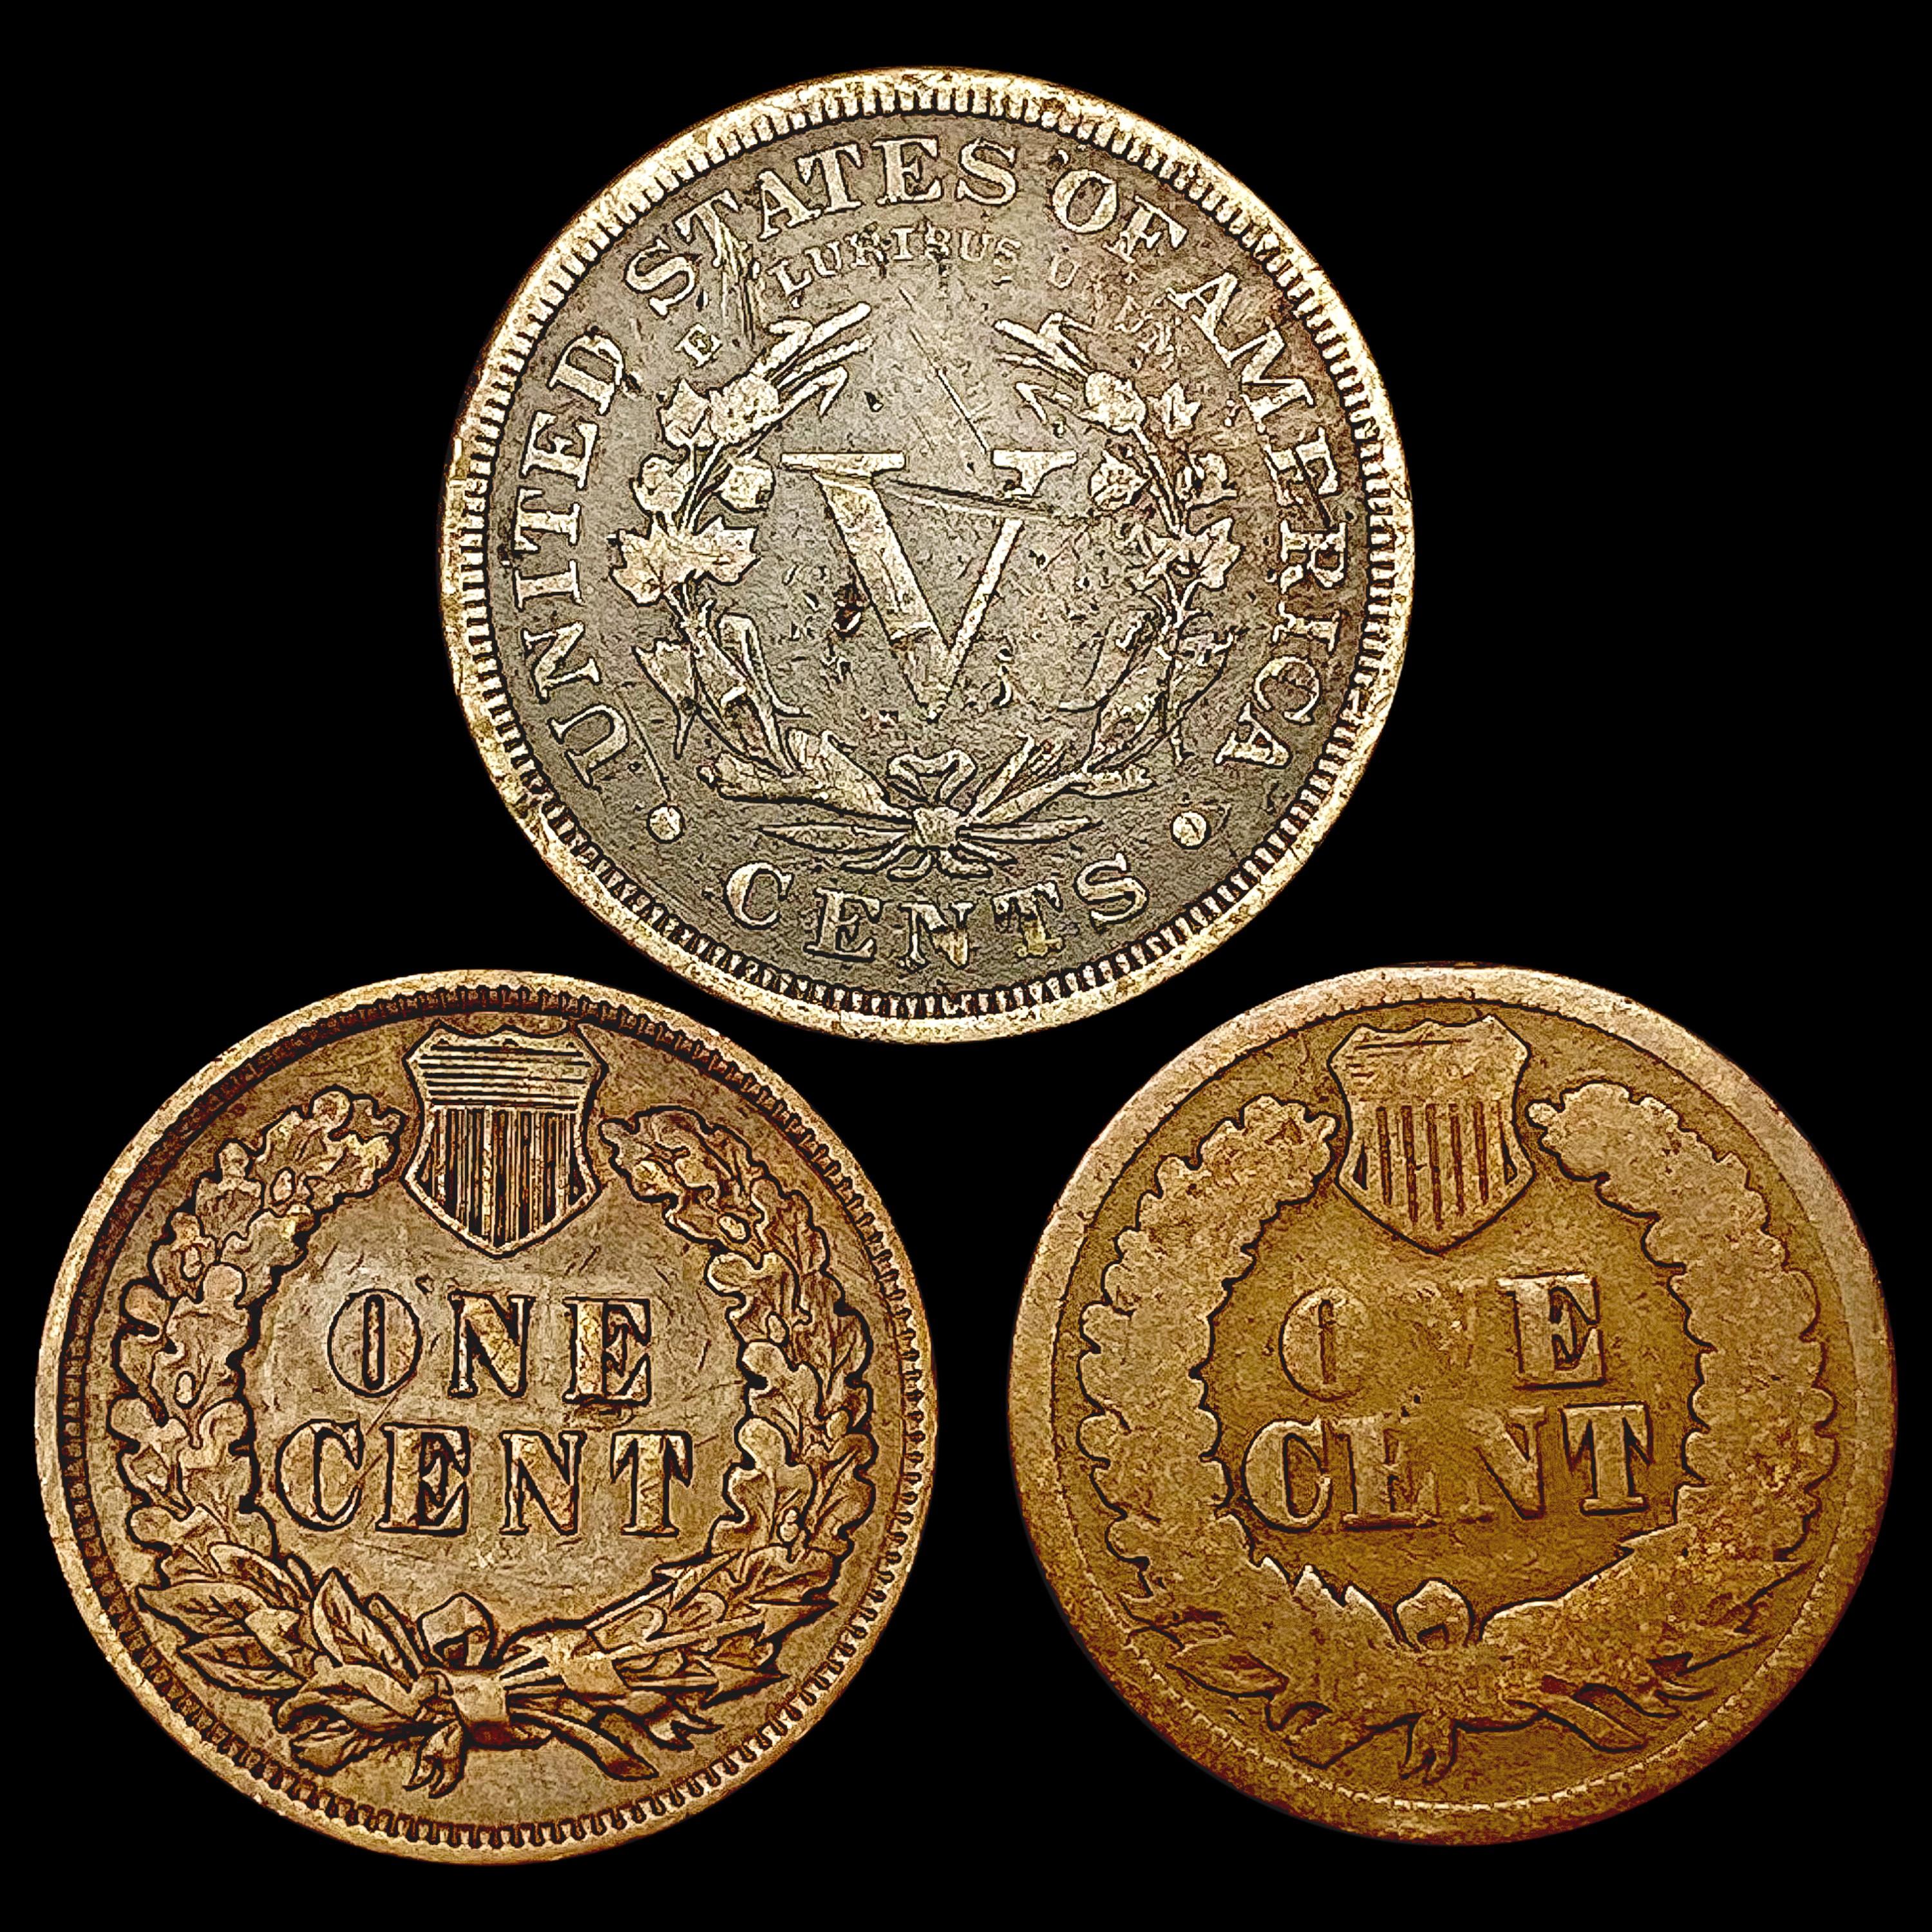 [3] Varied US Coinage [1866, 1884, 1906] HIGH GRAD